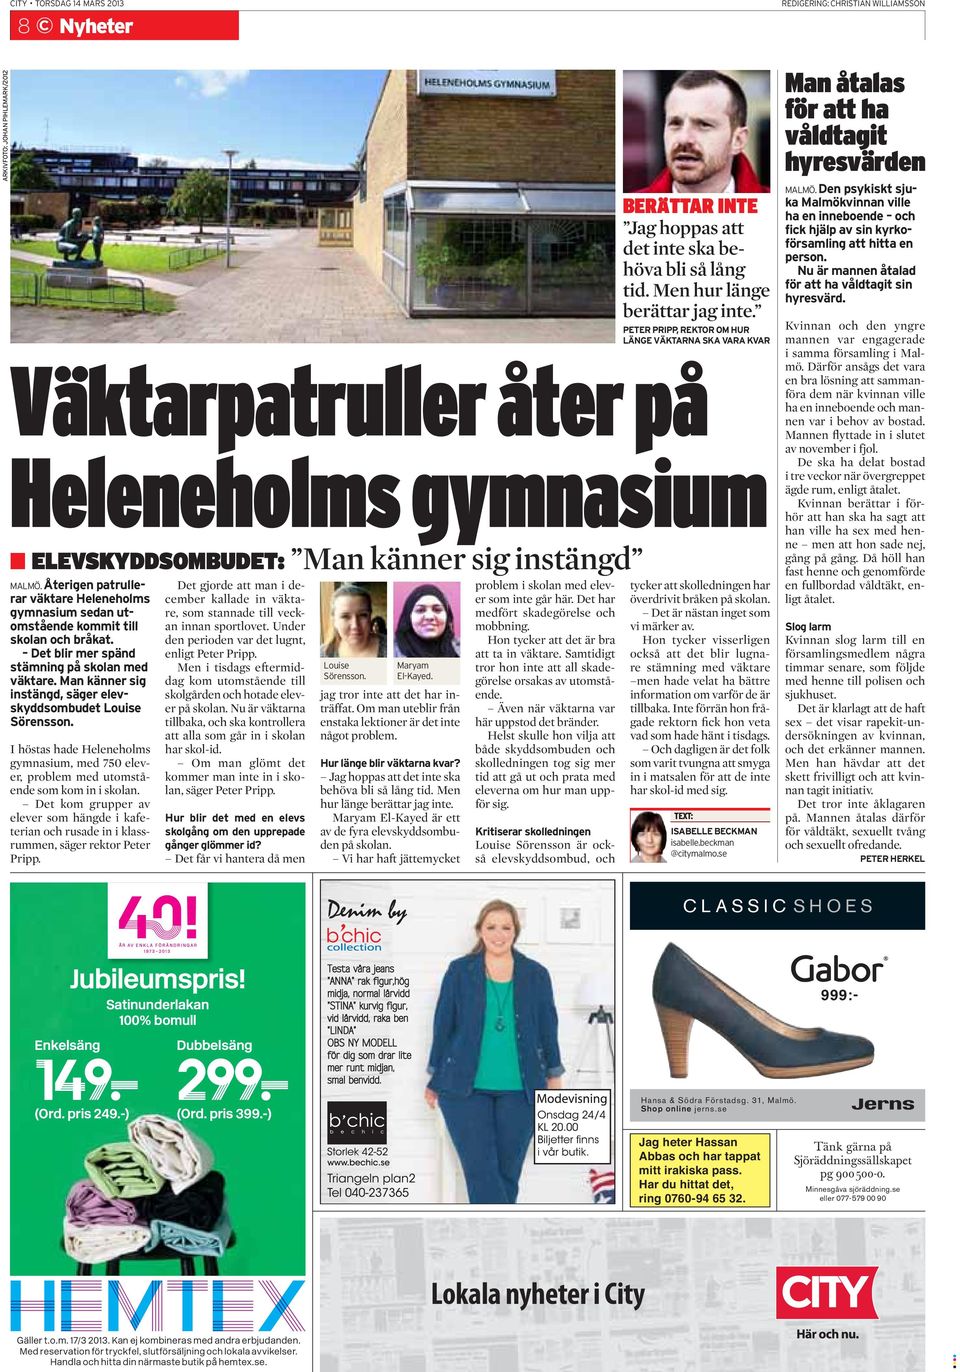 Man känner sig instängd, säger elevskyddsombudet Louise Sörensson. I höstas hade Heleneholms gymnasium, med 750 elever, problem med utomstående som kom in i skolan.